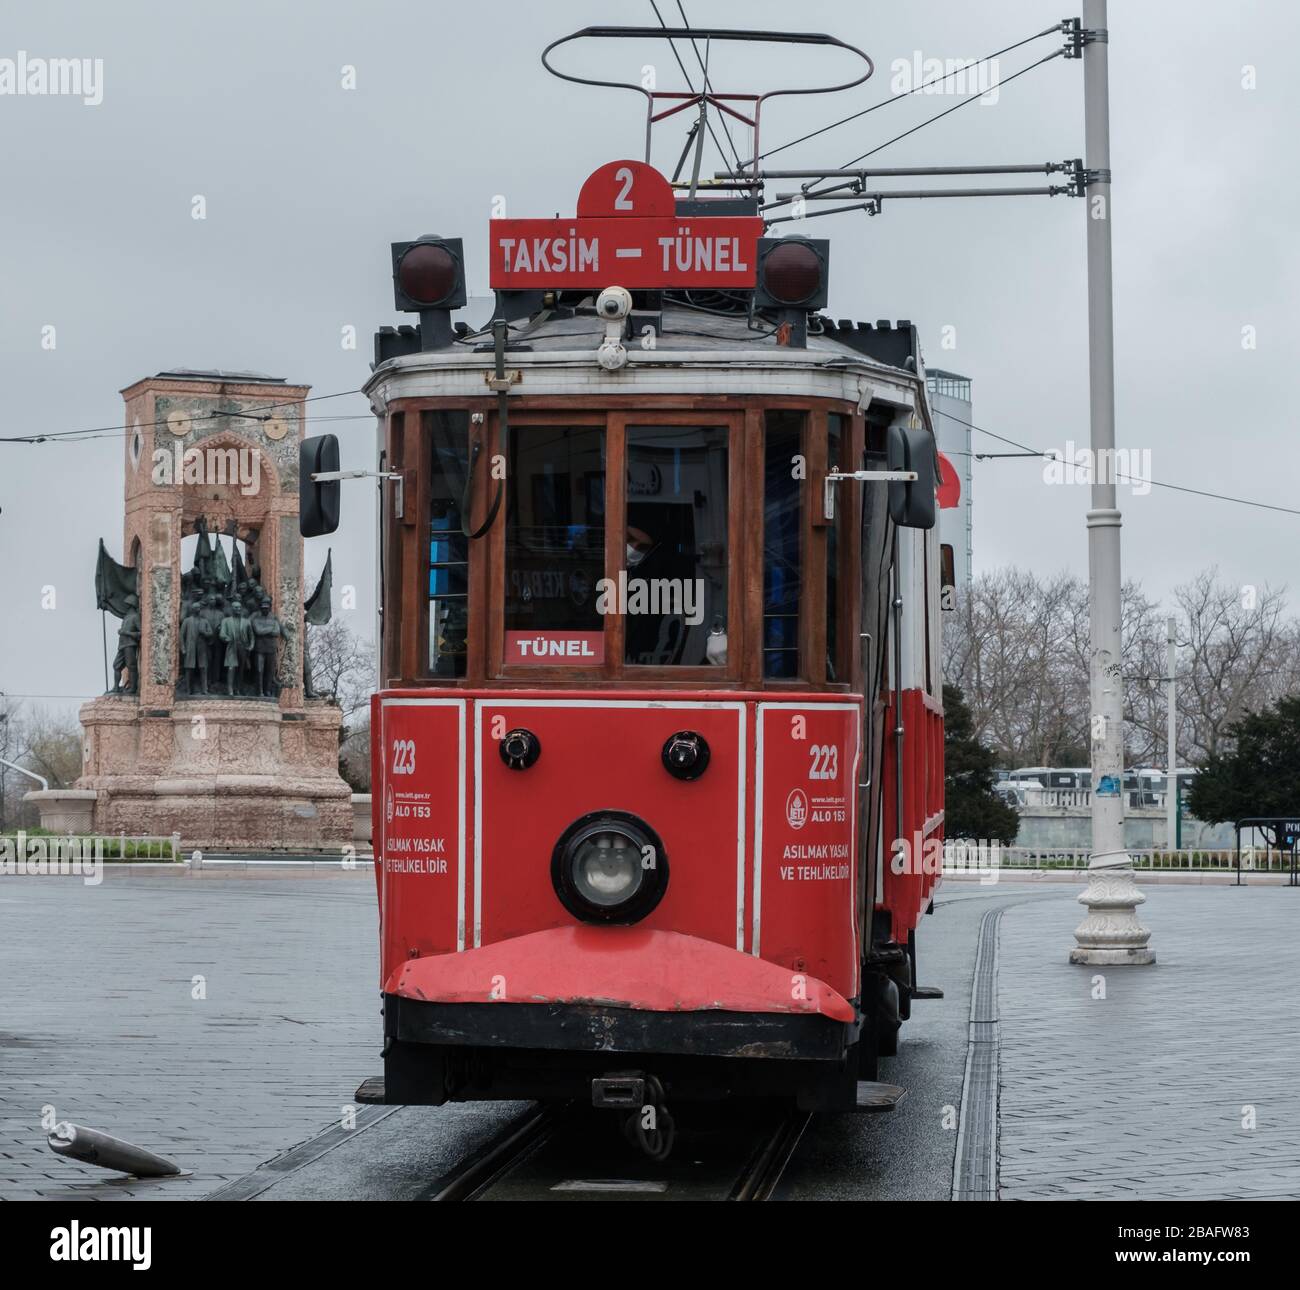 Tramway rouge nostalgique sur la place Taksim. Istiklal Street est une destination populaire à Istanbul.Tram court presque vide Istiklal Street en raison de coronaviru Banque D'Images